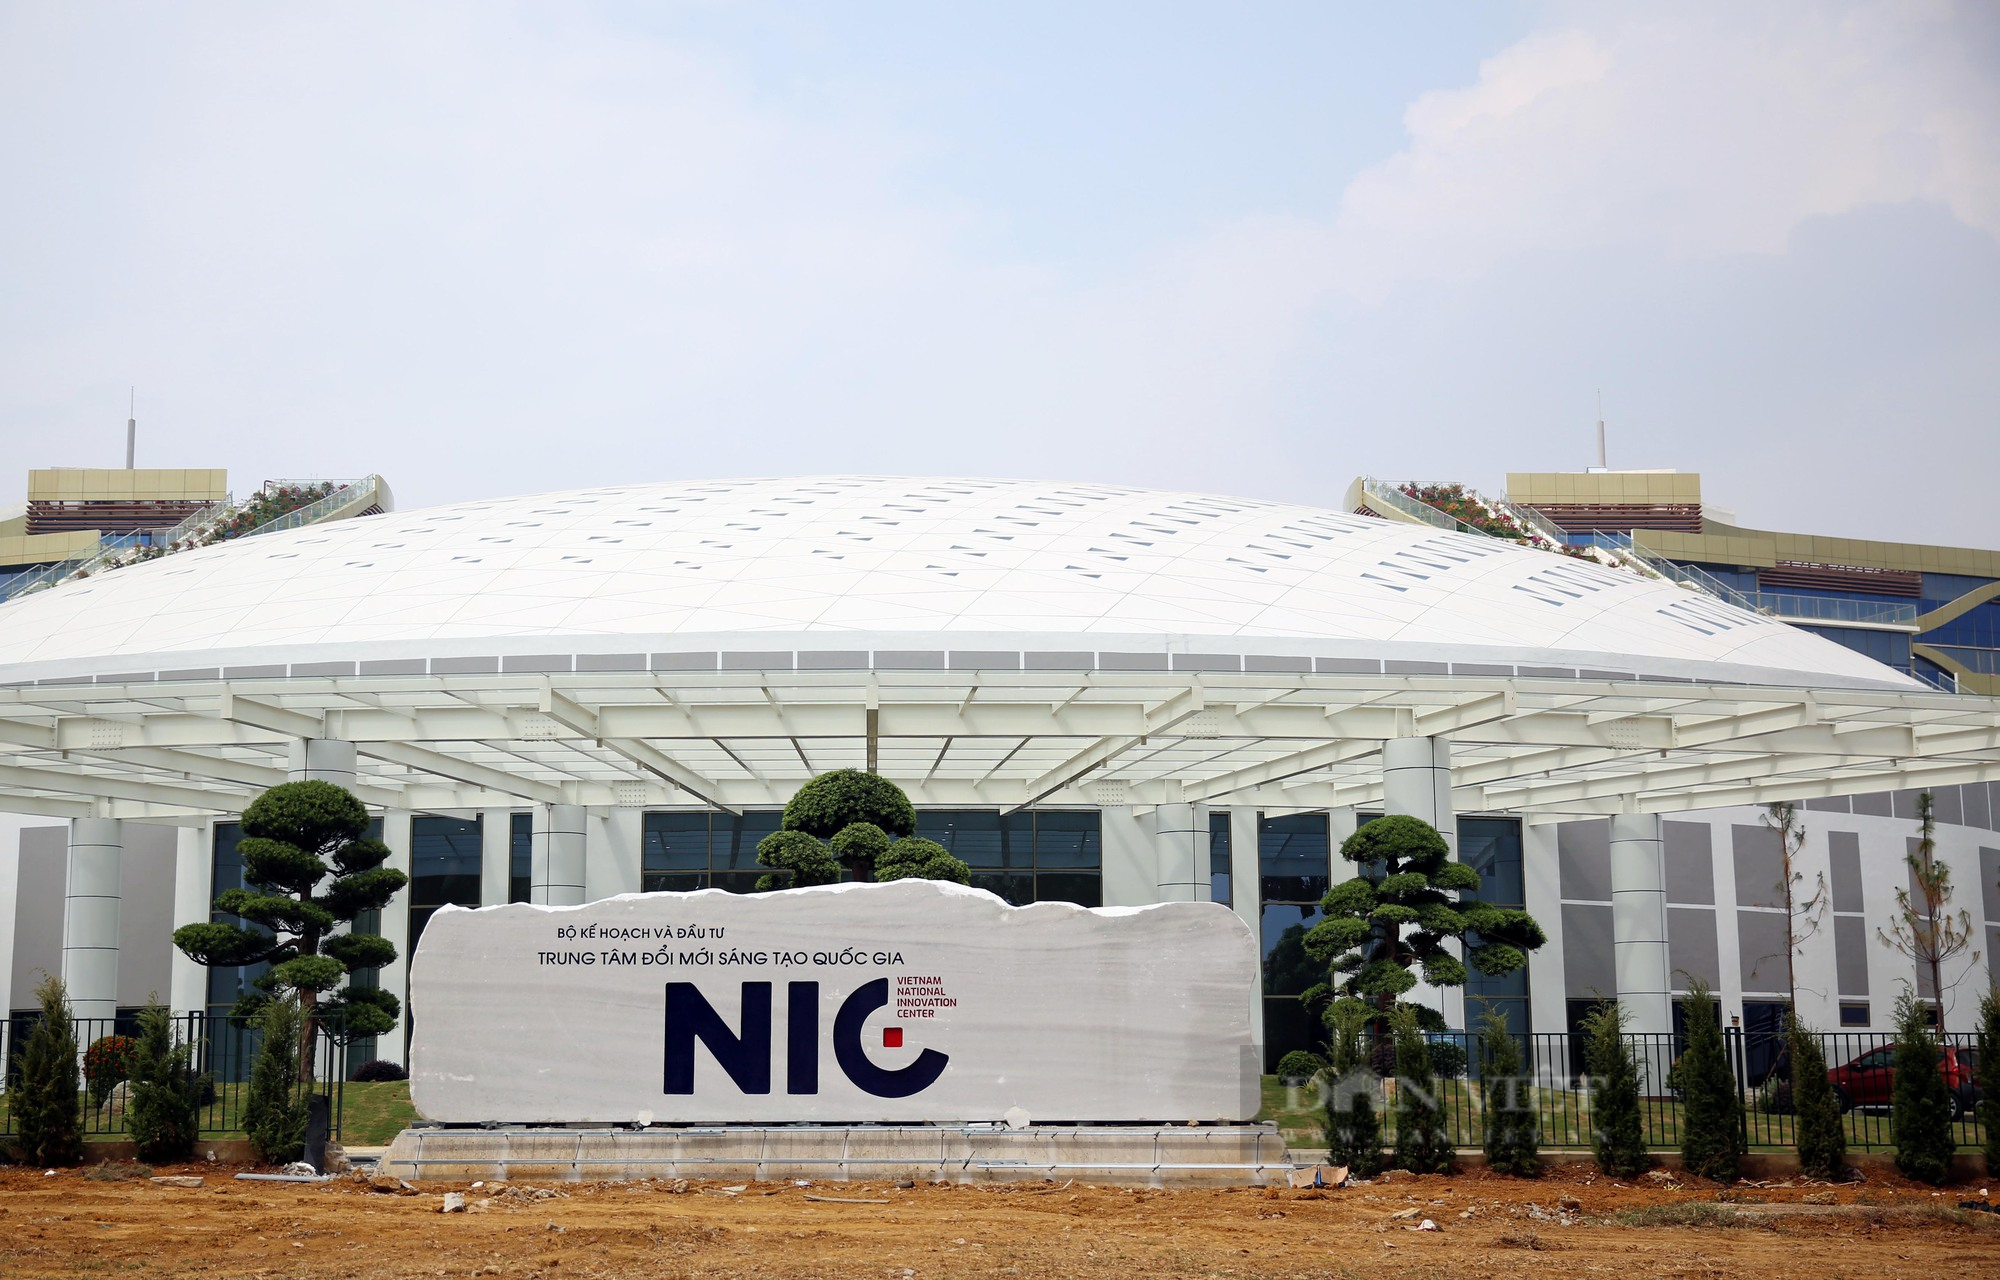 Hình ảnh Trung tâm Đổi mới sáng tạo Quốc gia trị giá 750 tỷ đồng ở Hà Nội - Ảnh 2.